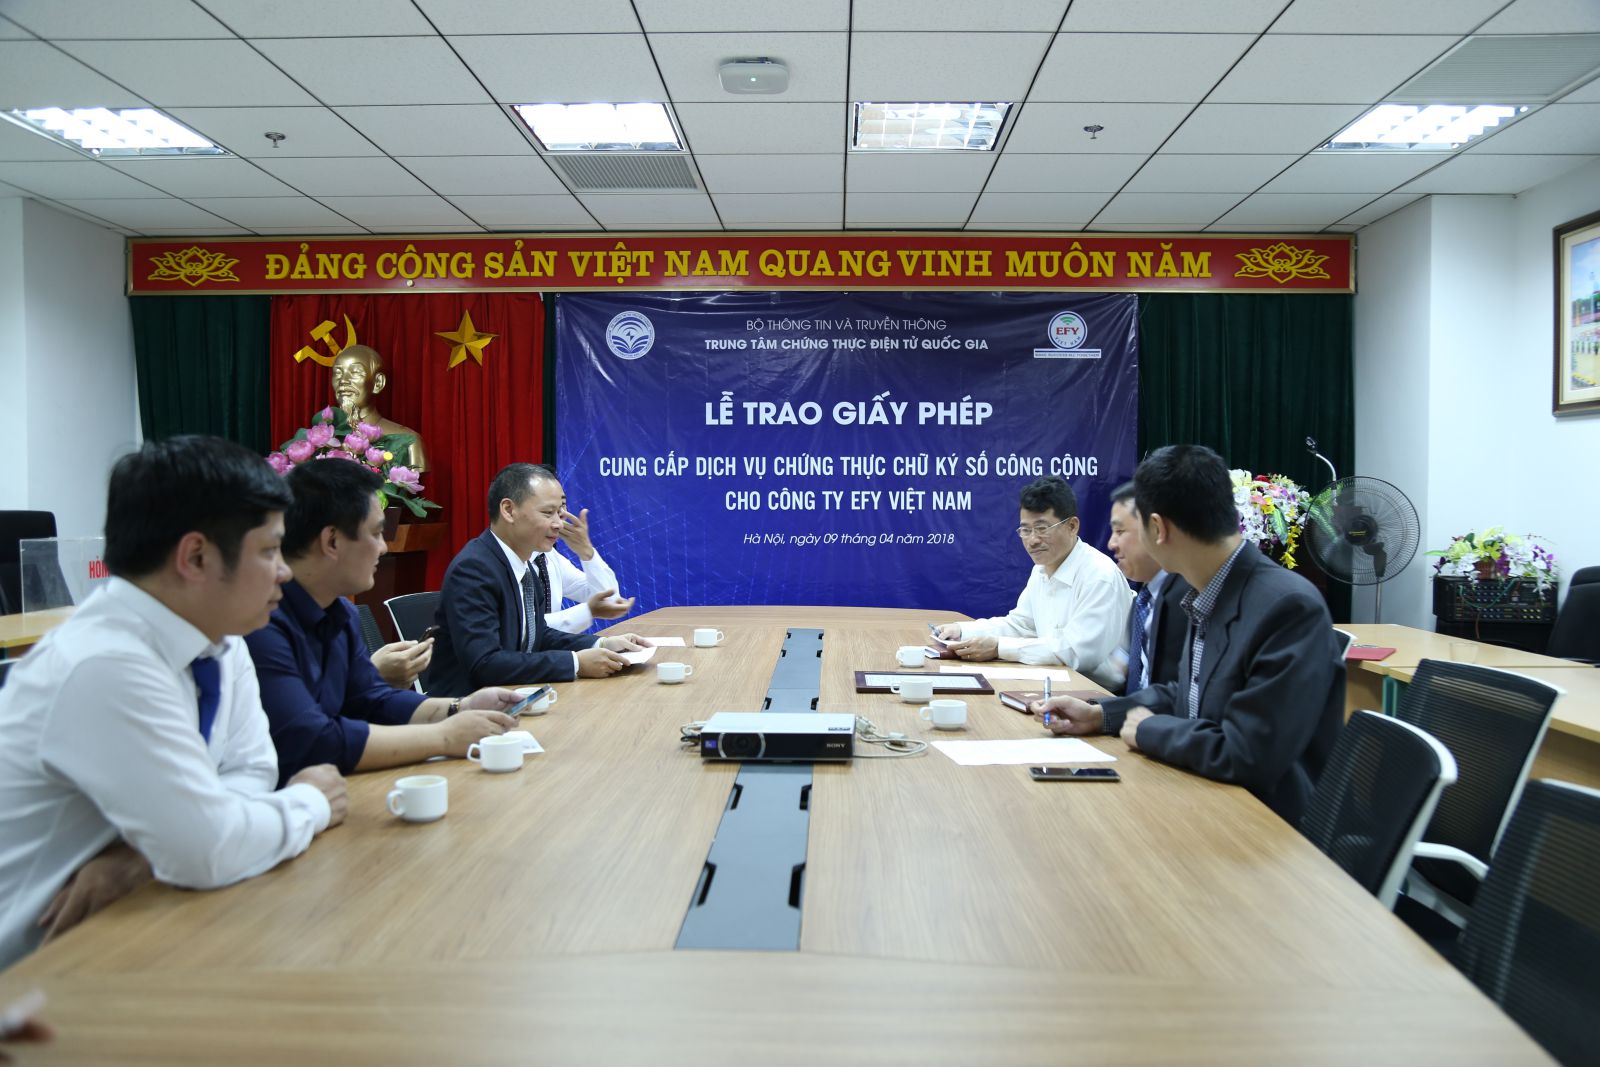 Lễ trao giấy phép cung cấp dịch vụ chứng thực chữ ký số công cộng cho EFY Việt Nam